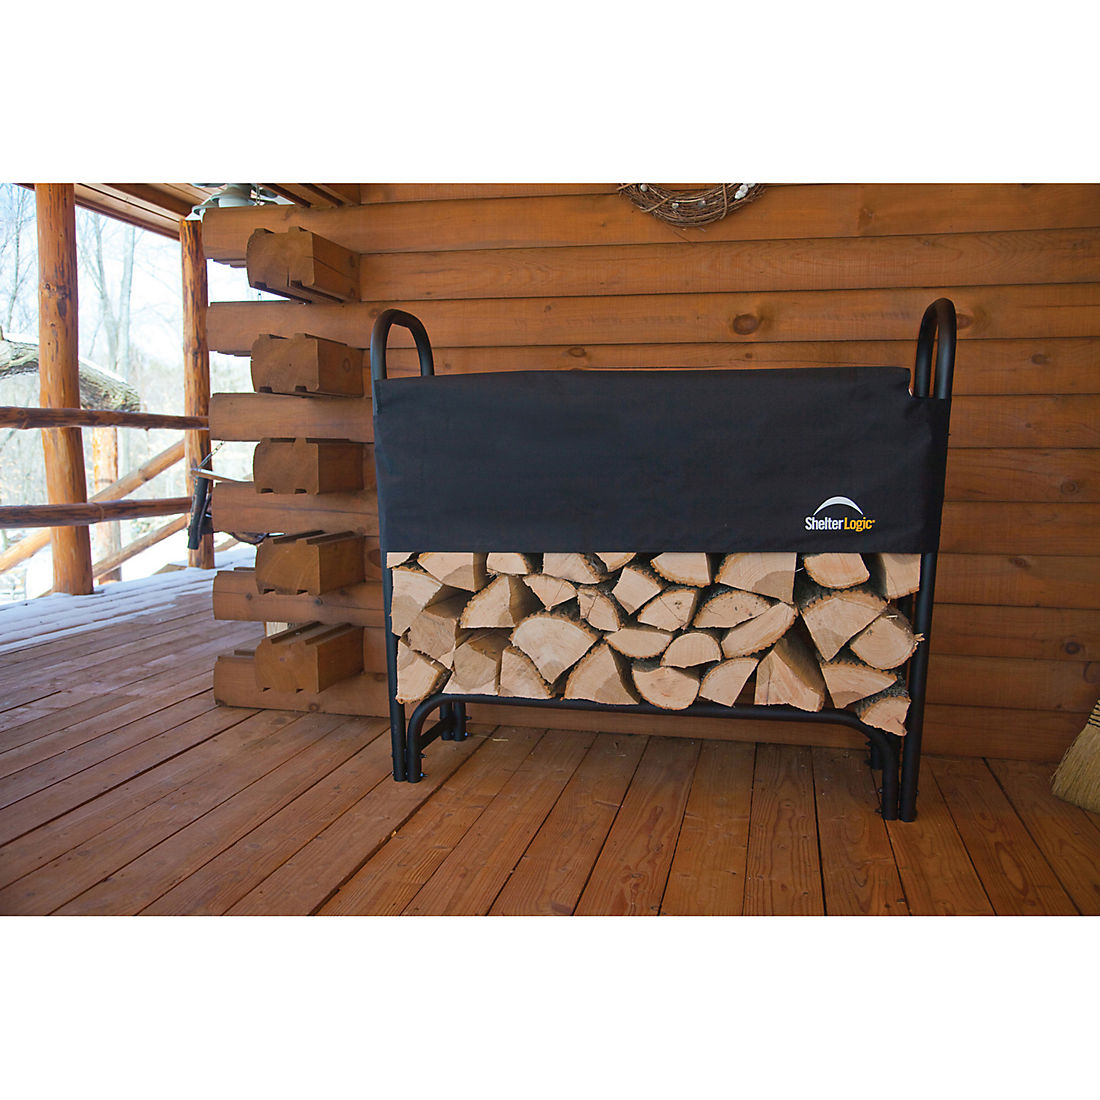 ShelterLogic Fireplace Classic Log Holder 